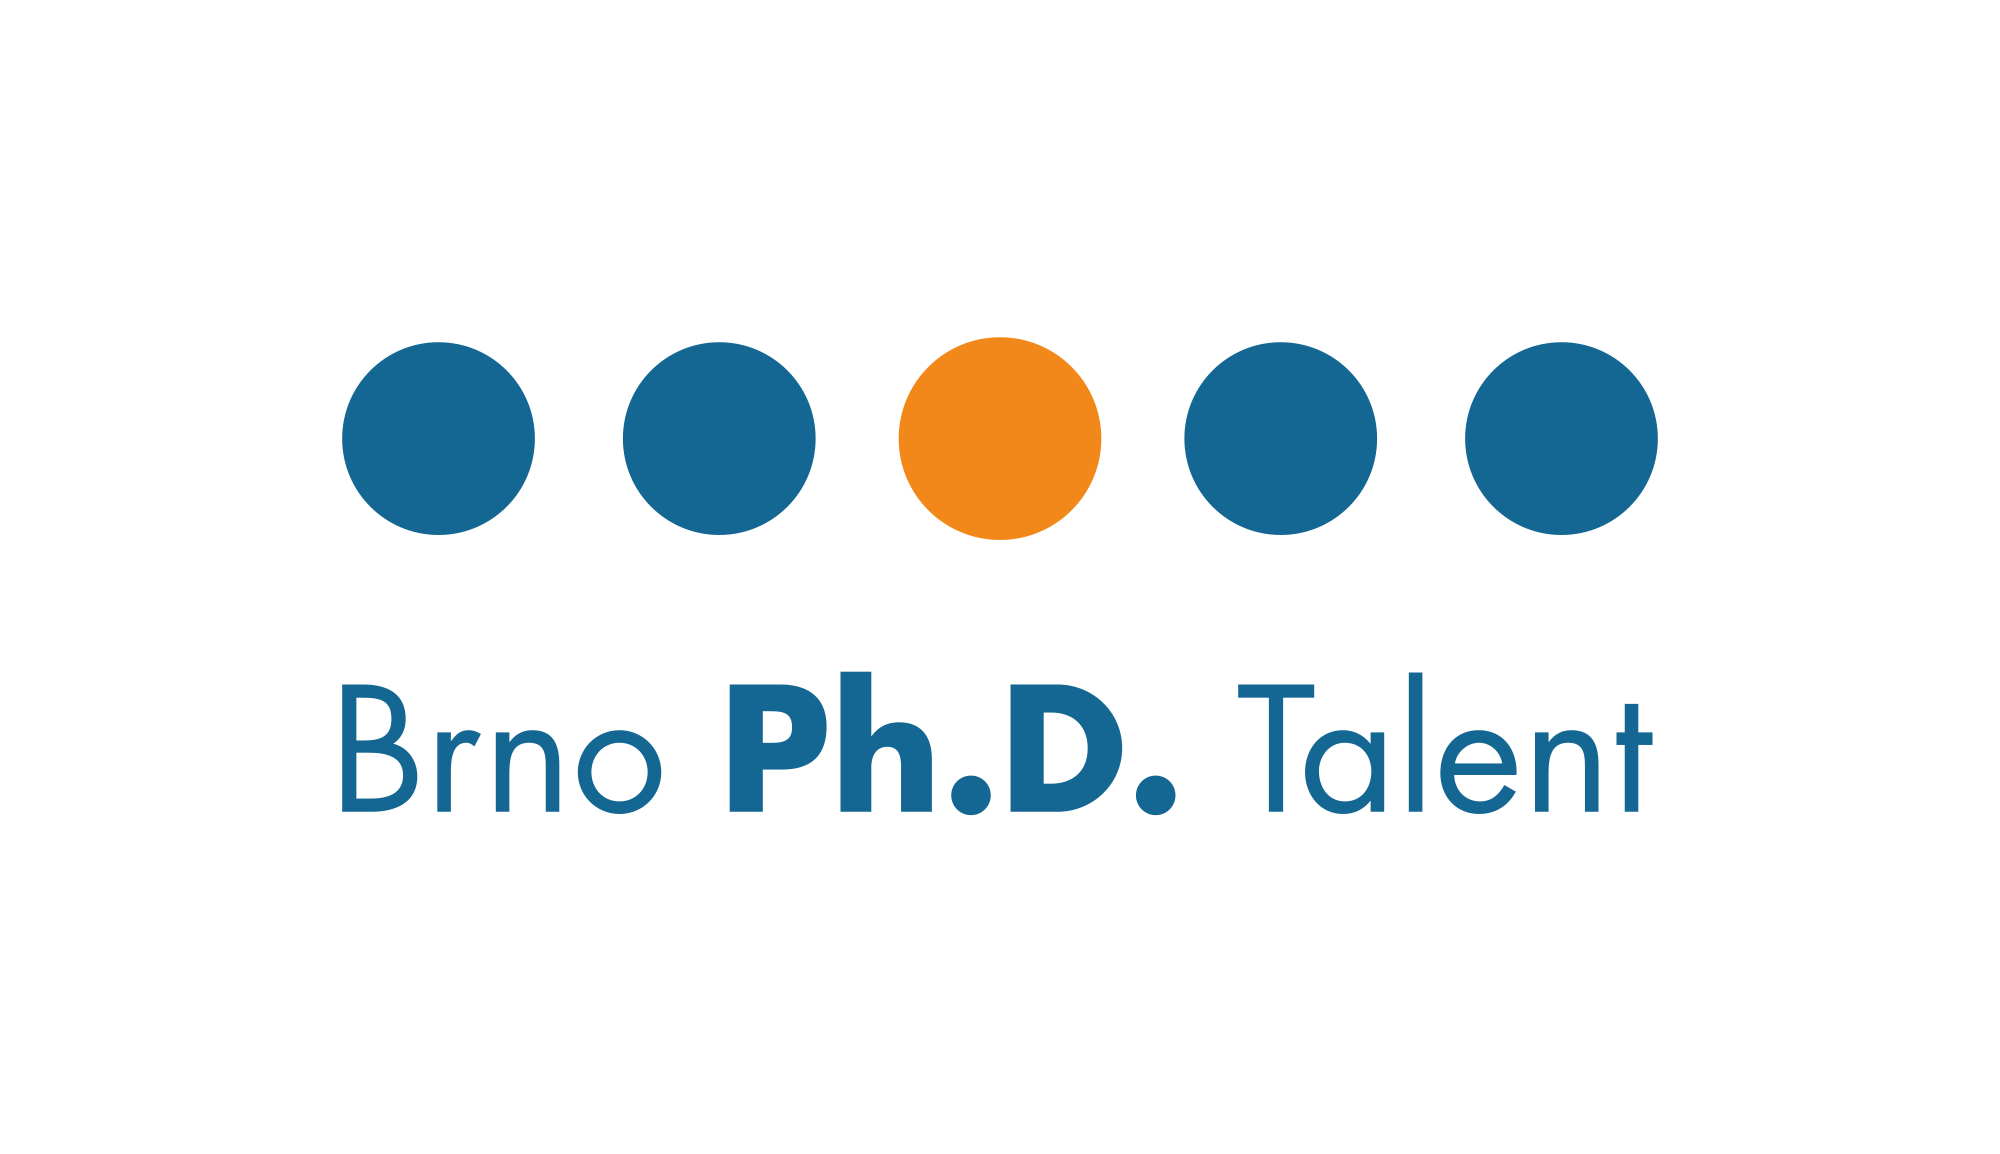 brno phd talent logo